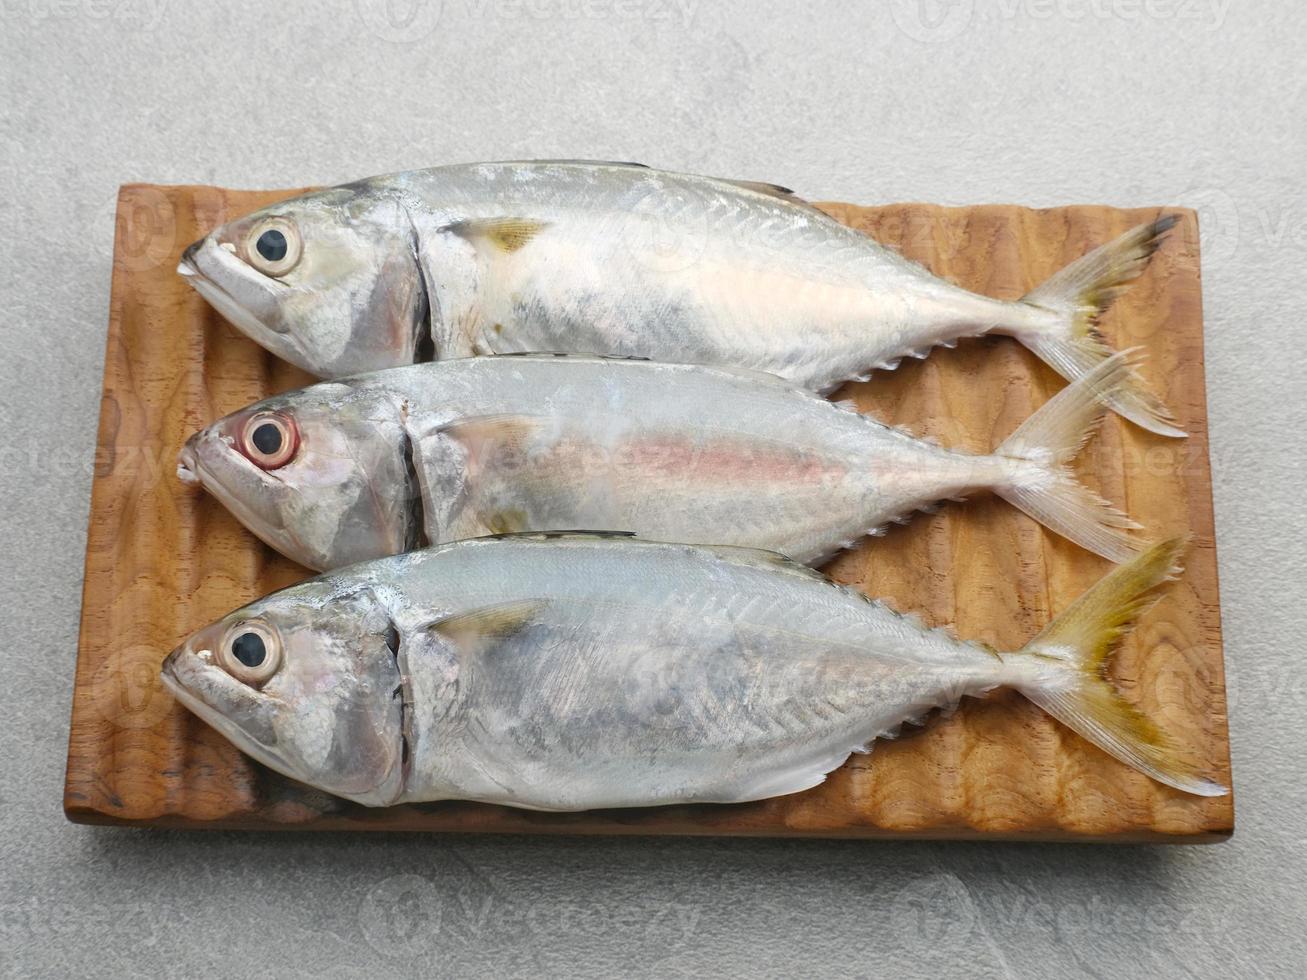 ikan kembung, pescado kembung o pescado caballa en una tabla de cortar de madera. foto